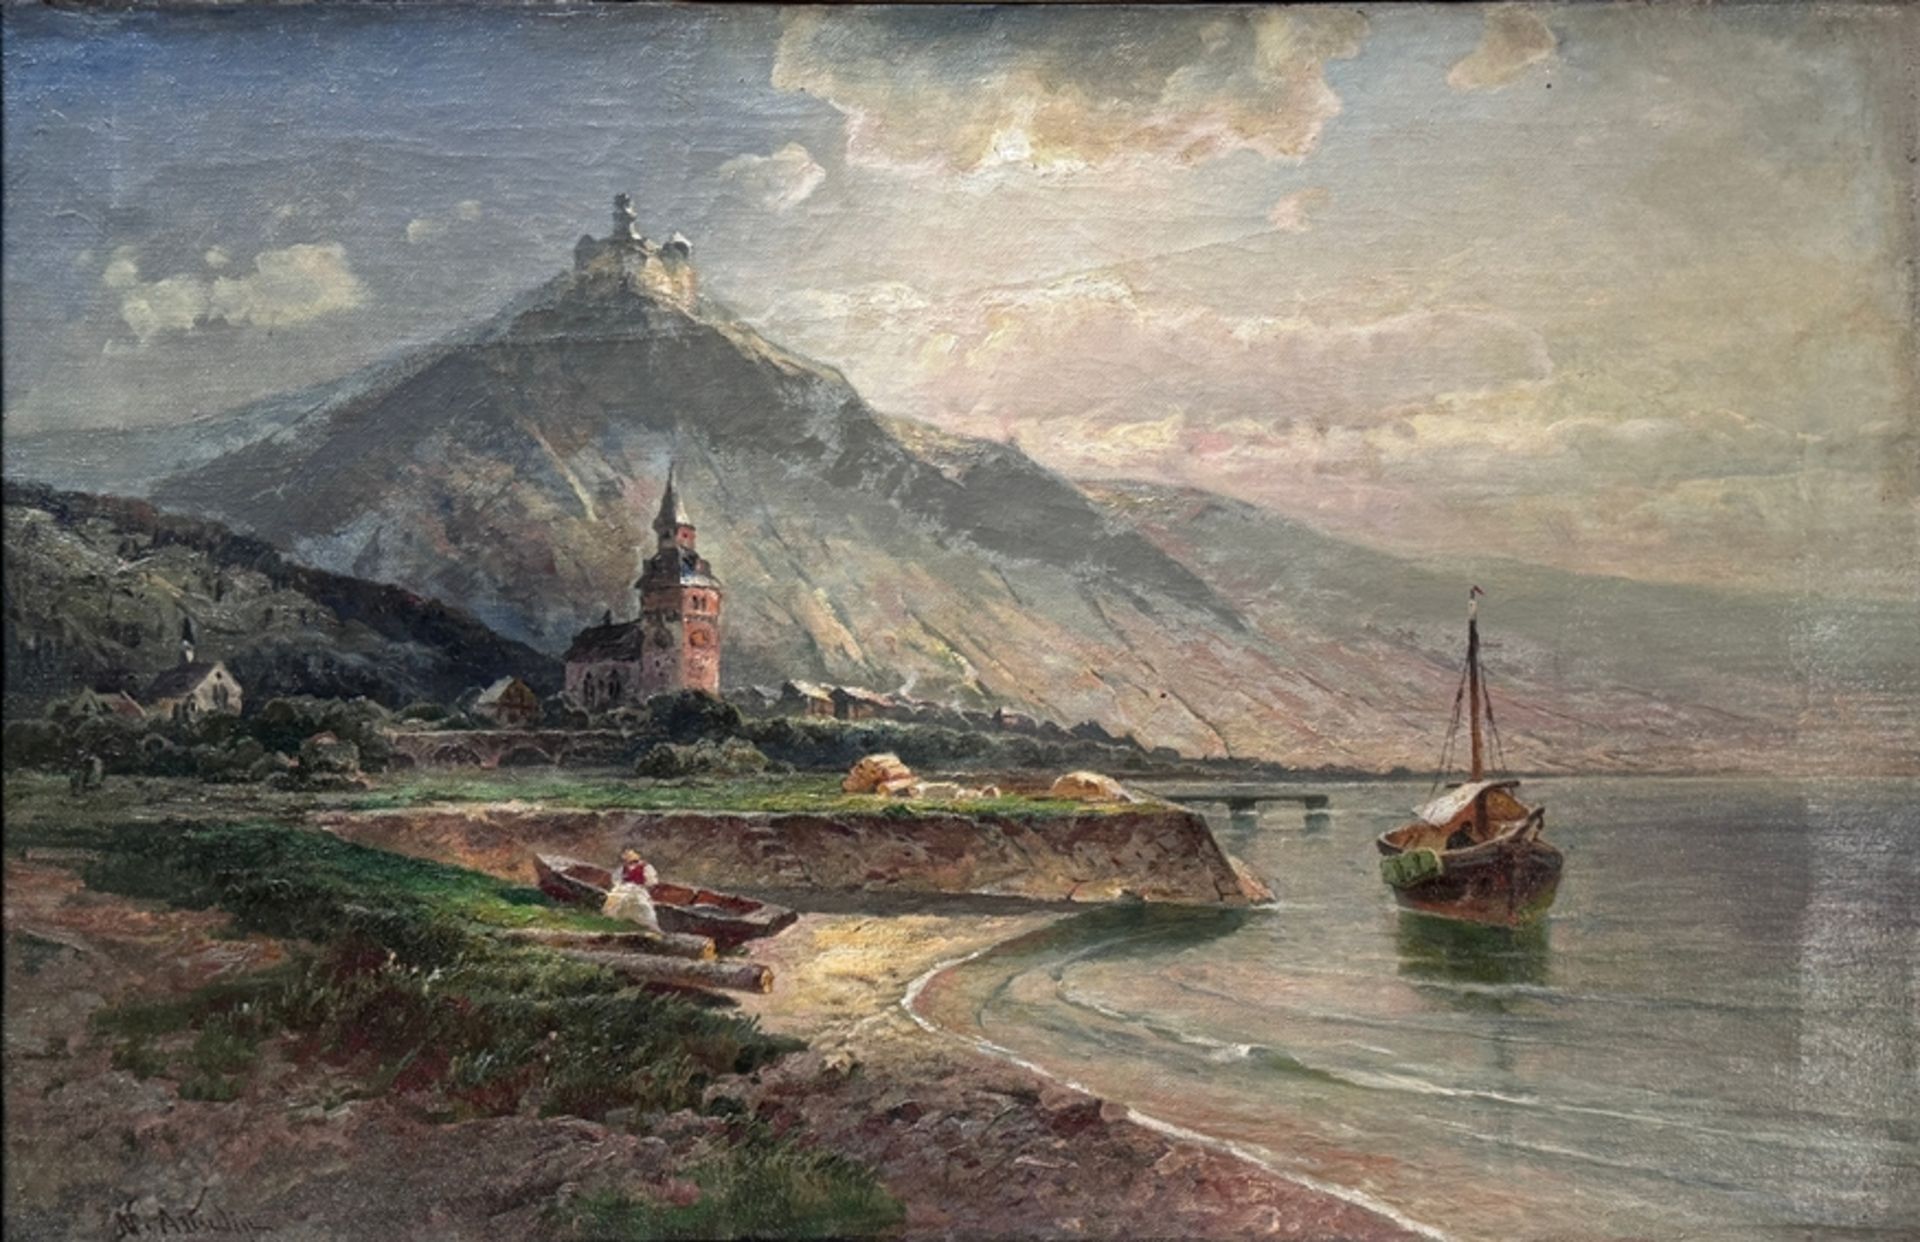 Astudin, Nikolai von (1848 Moscow - 1925 Oberlahnstein) "Marksburg", landscape view of the hilltop